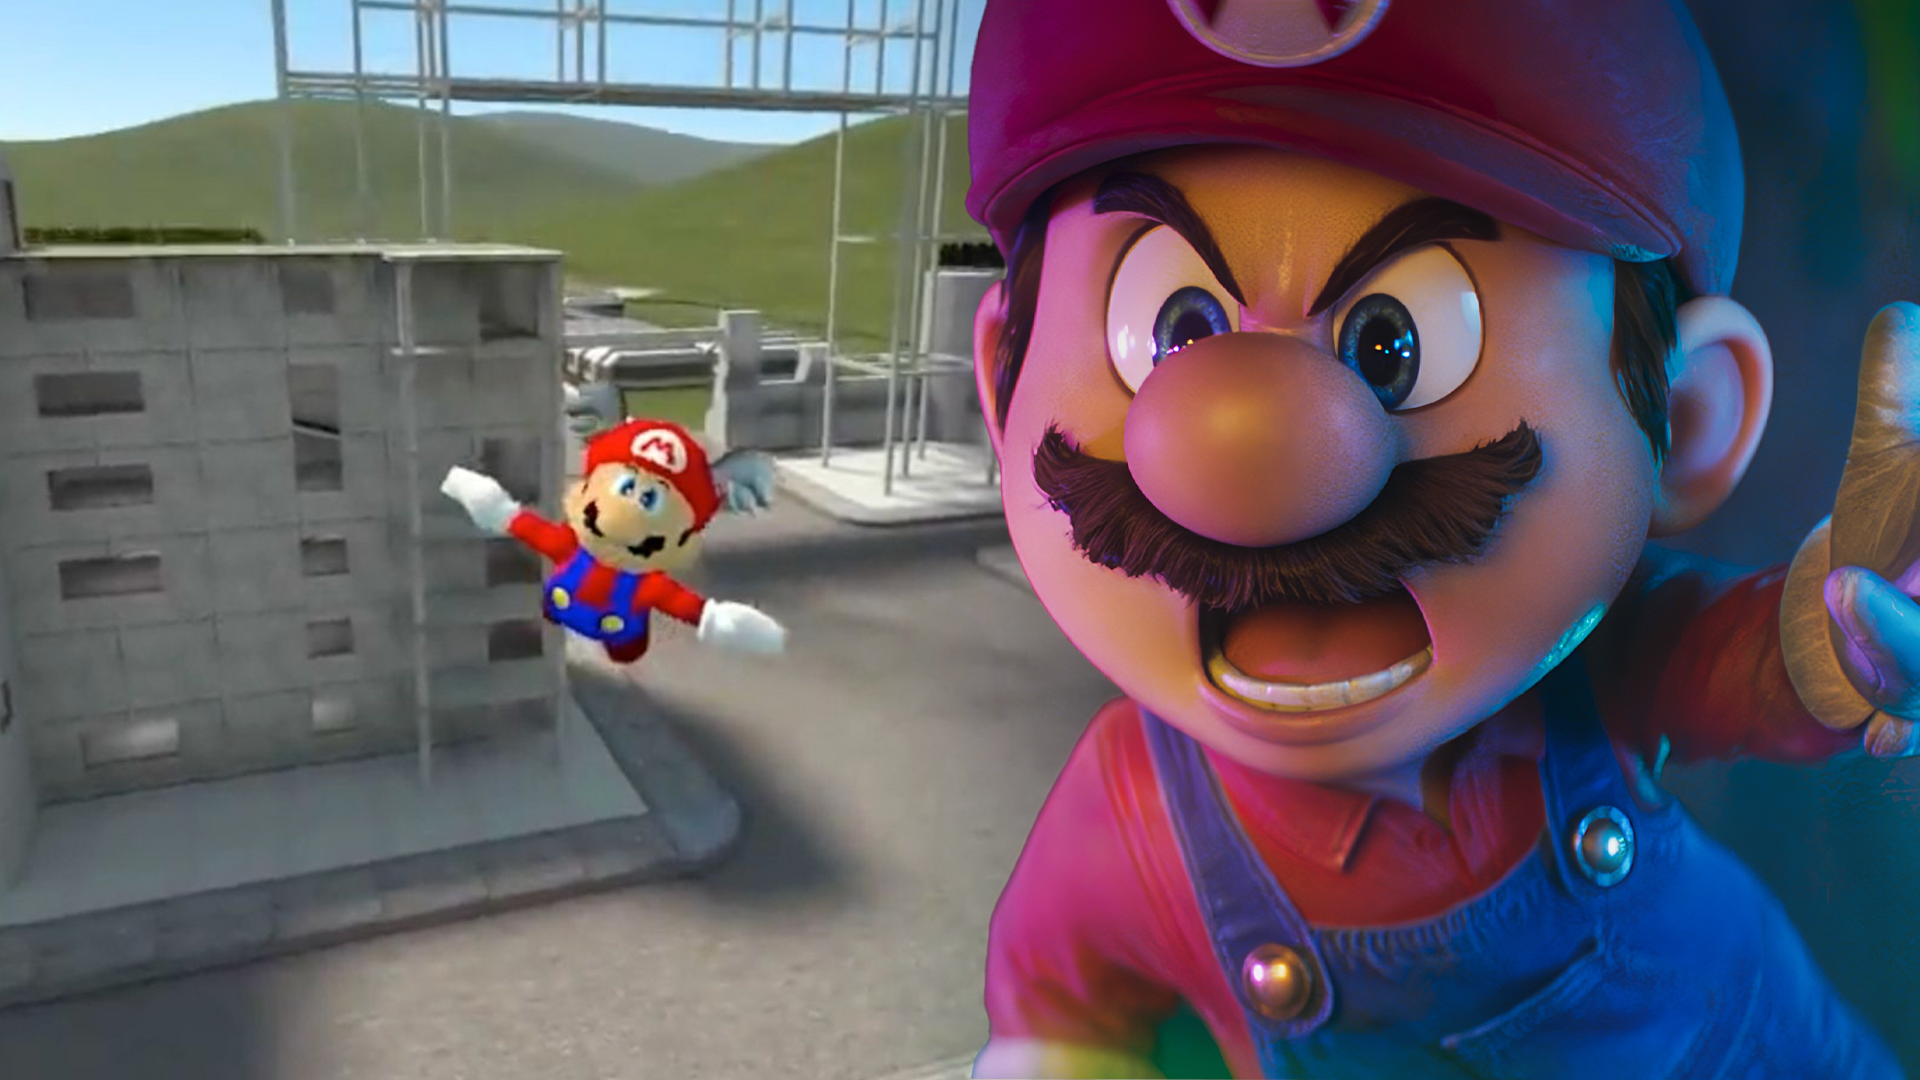 Удаление Garry's Mod может оказаться самым странным в истории Nintendo